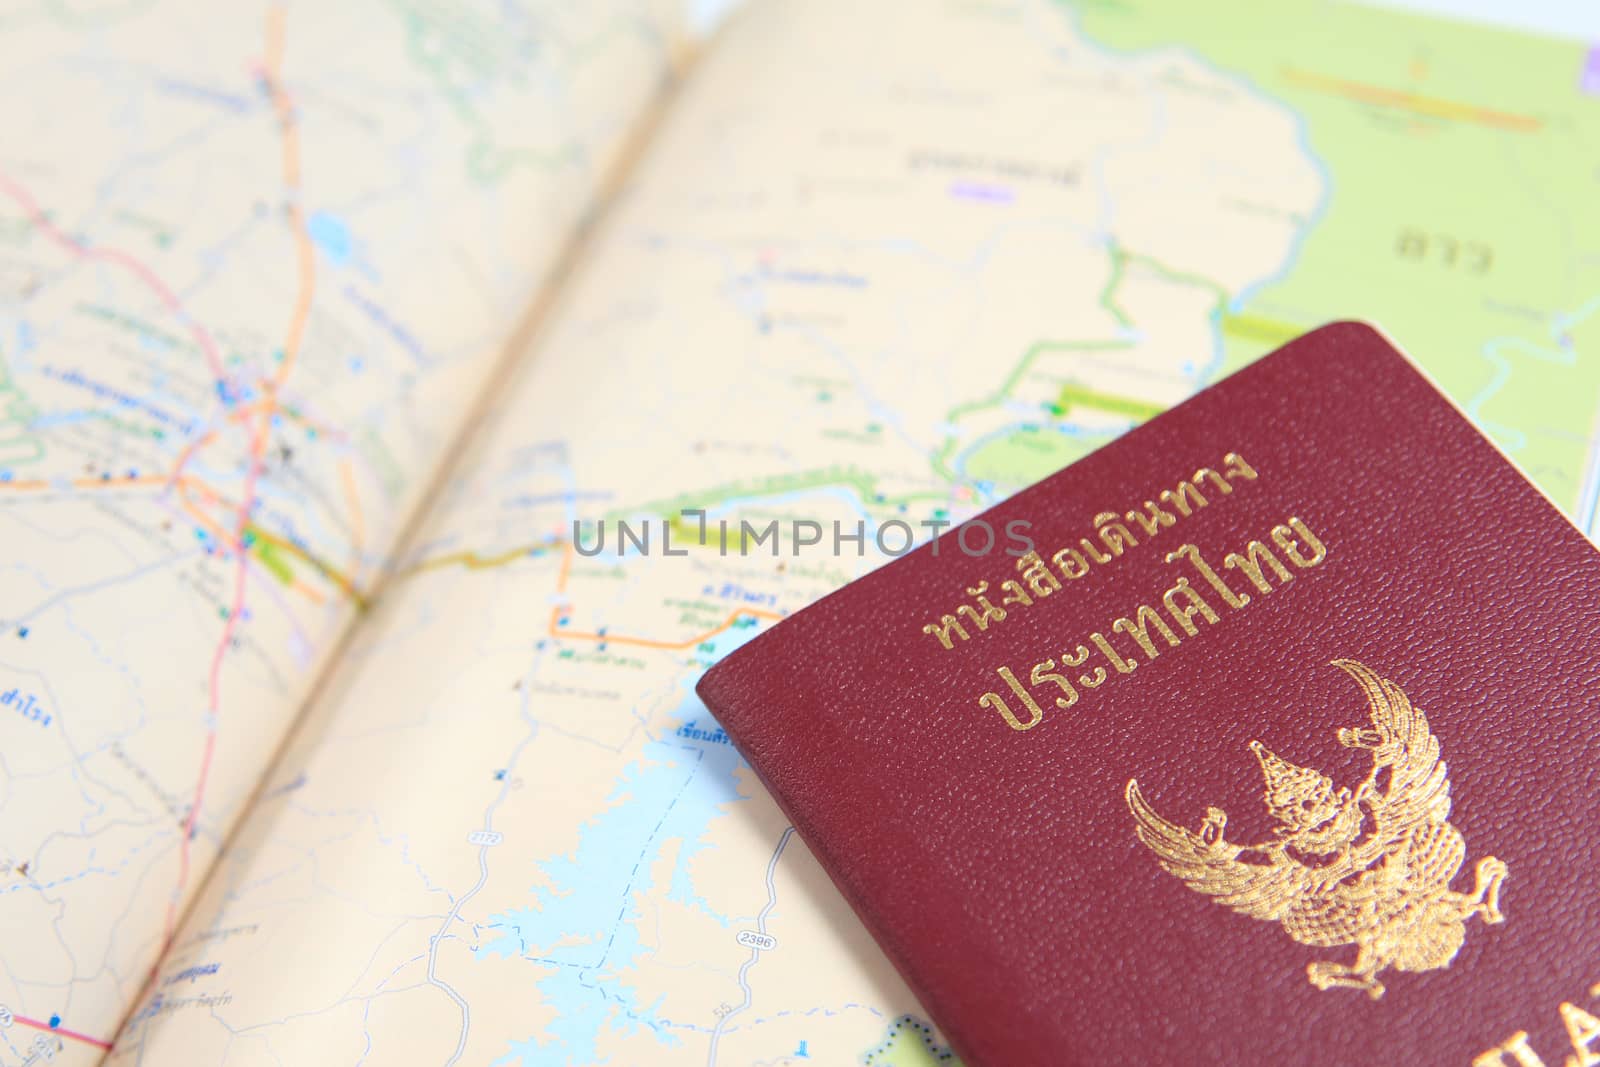 Thailand Passport by foto76